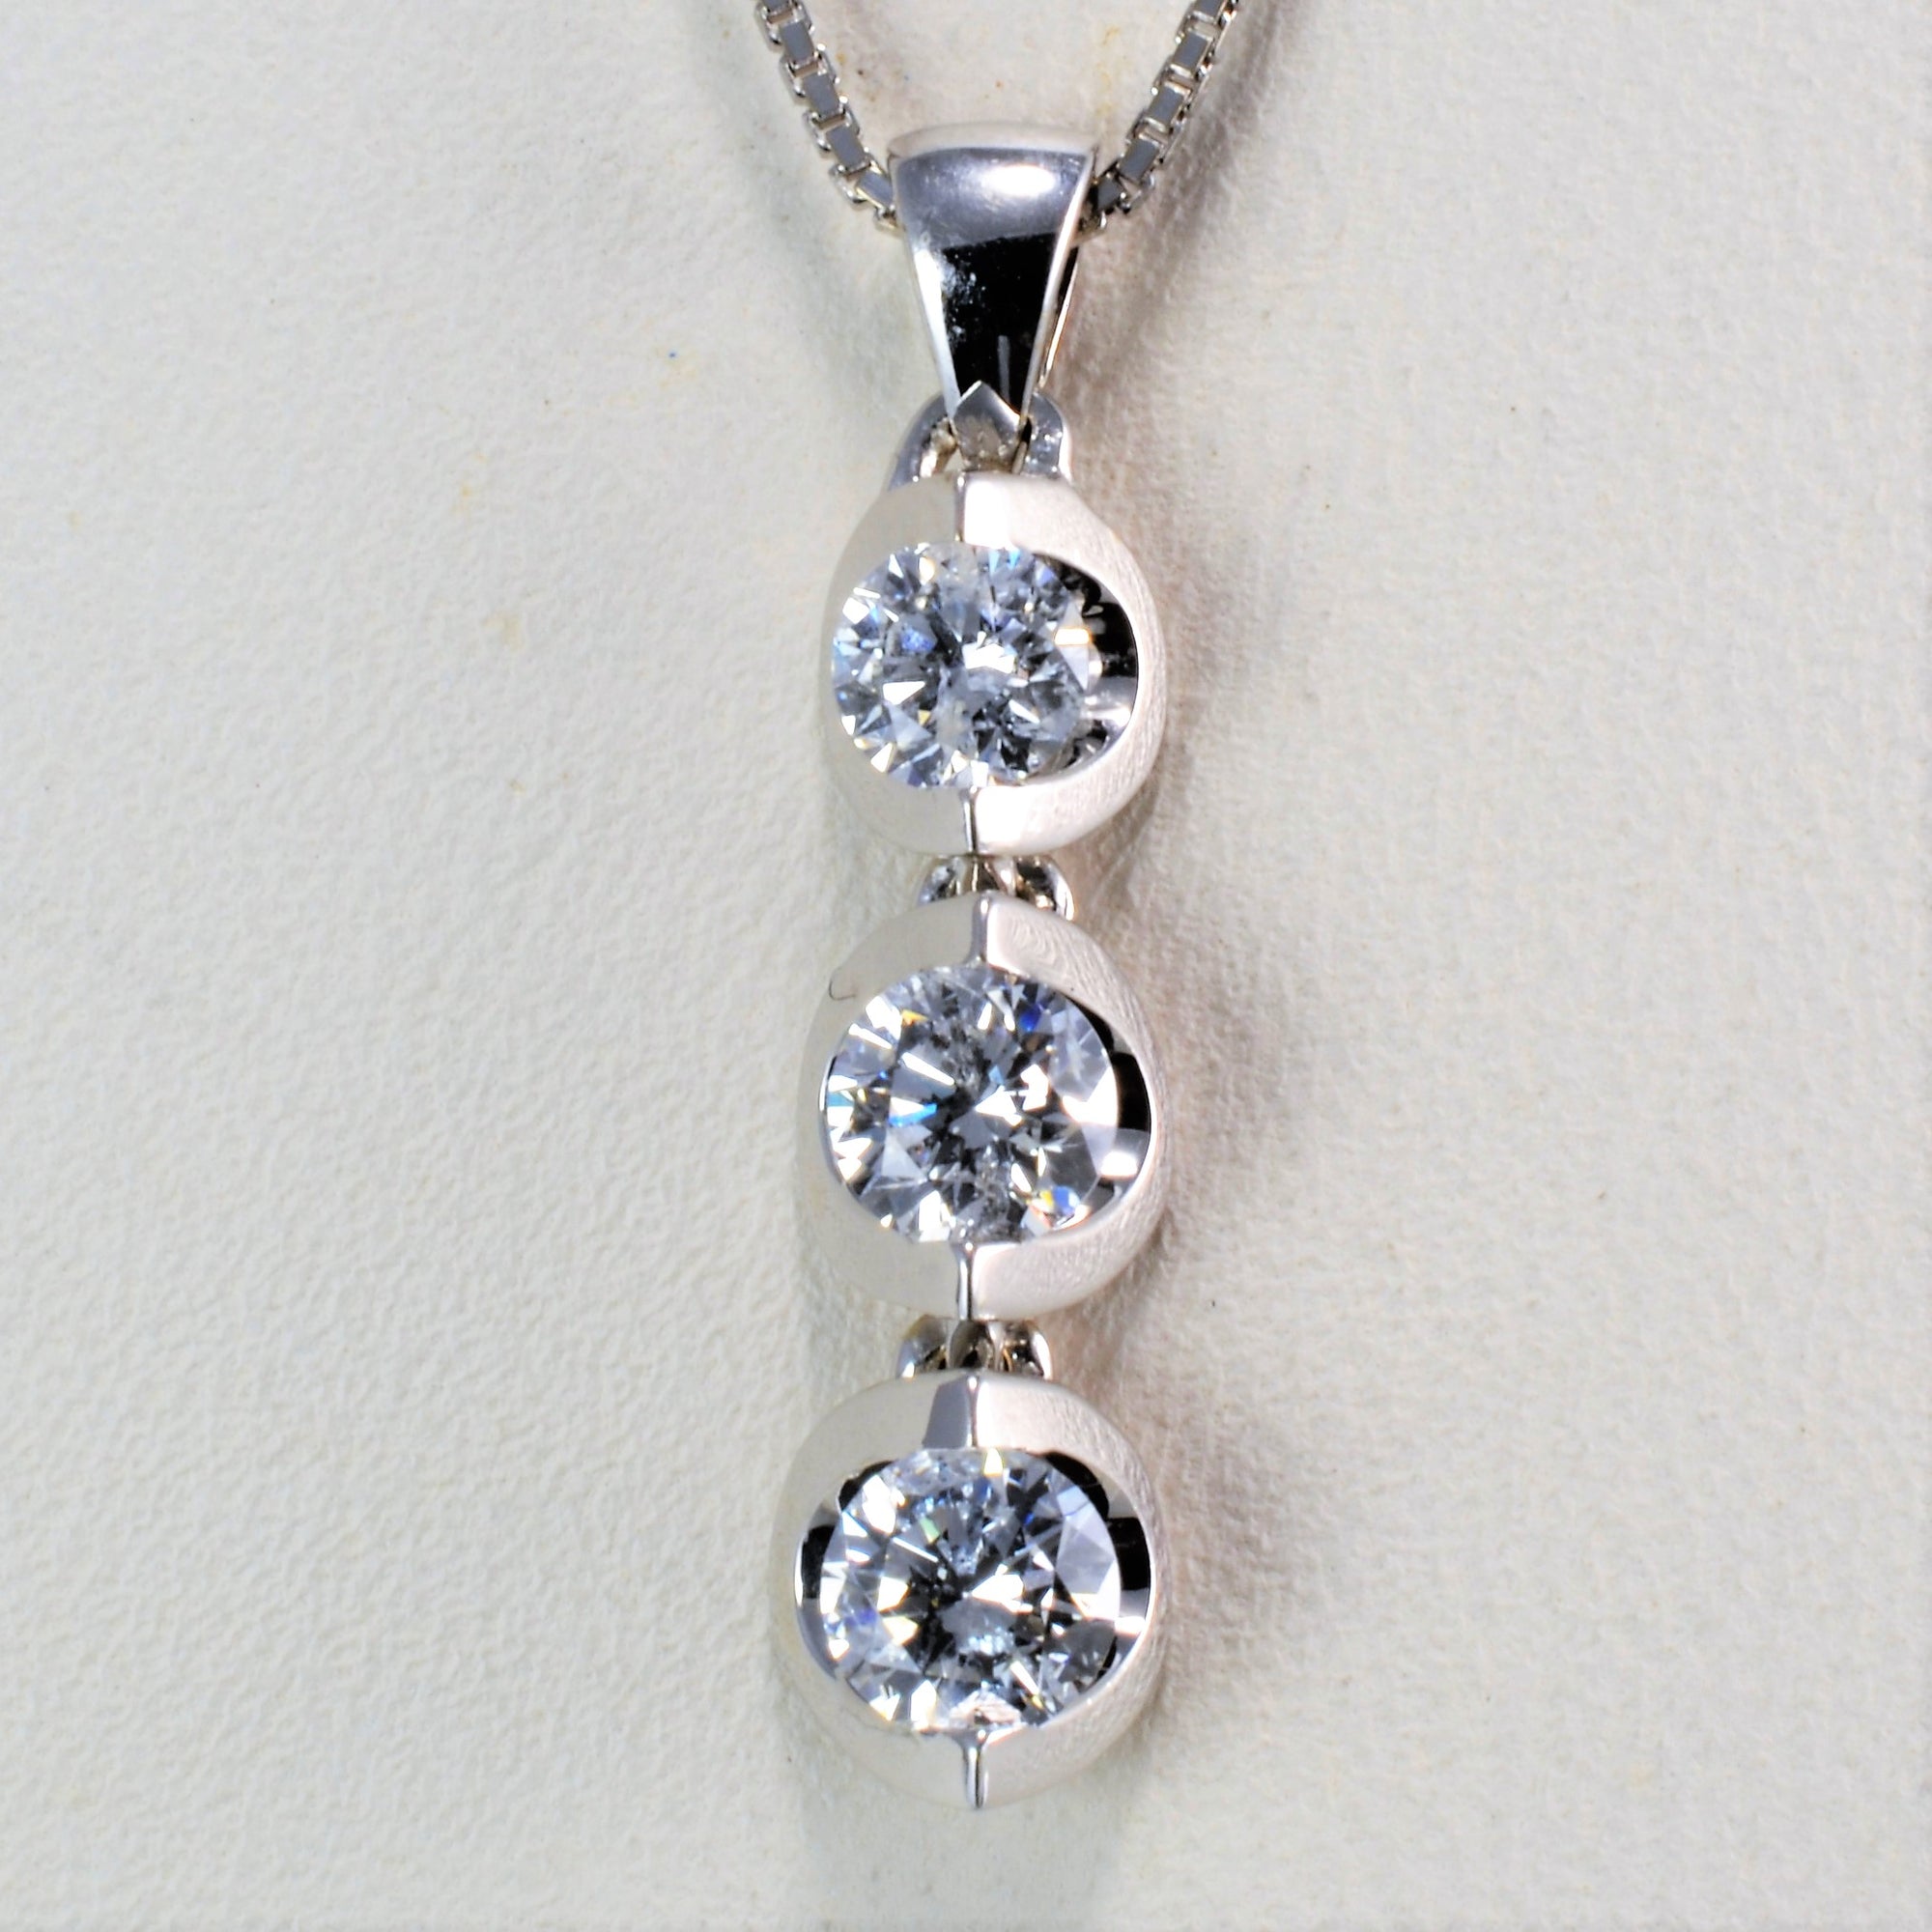 Diamond Journey Pendant Necklace | 0.50 ctw, 18''|